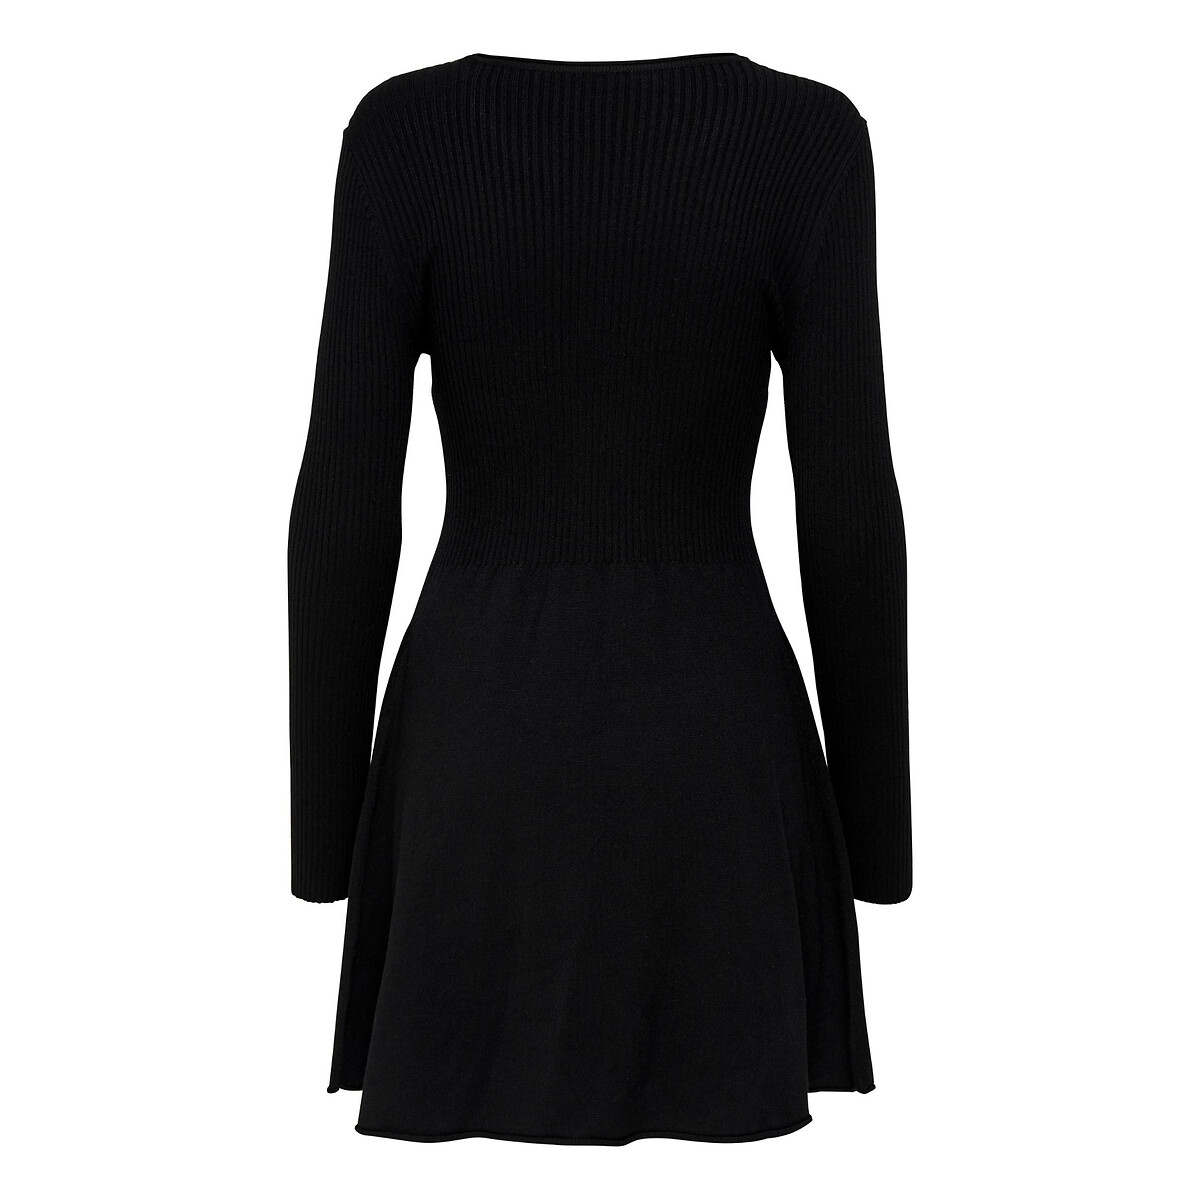 Платье Короткое расклешенное с длинными рукавами L черный LaRedoute, размер L - фото 1